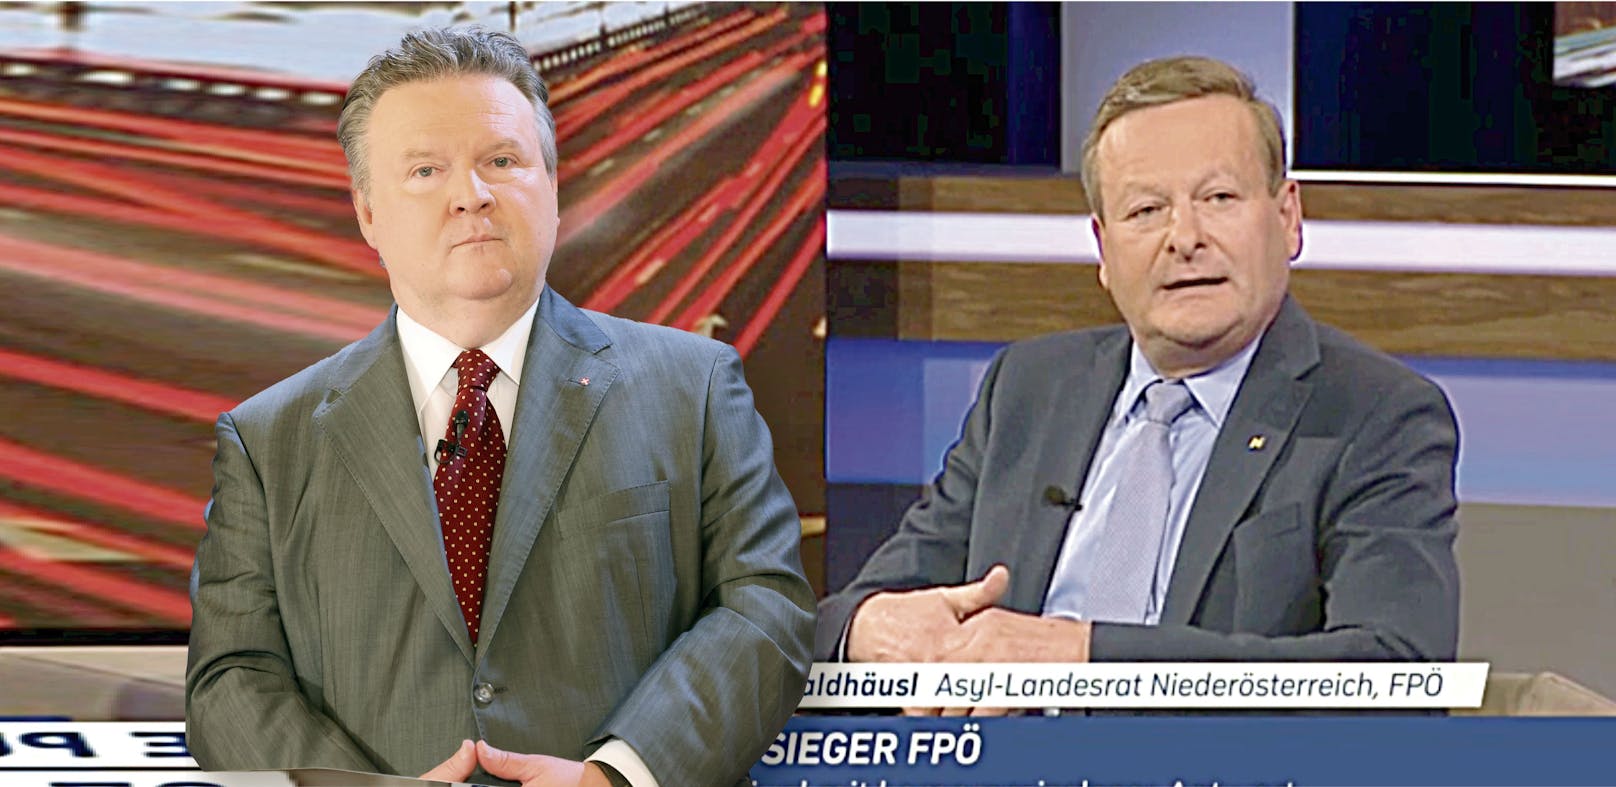 Wiens Stadtchef Michael Ludwig (SPÖ) kritisiert die Aussagen des NÖ-Integrationslandesrats Gottfried Waldhäusl (FPÖ) scharf.